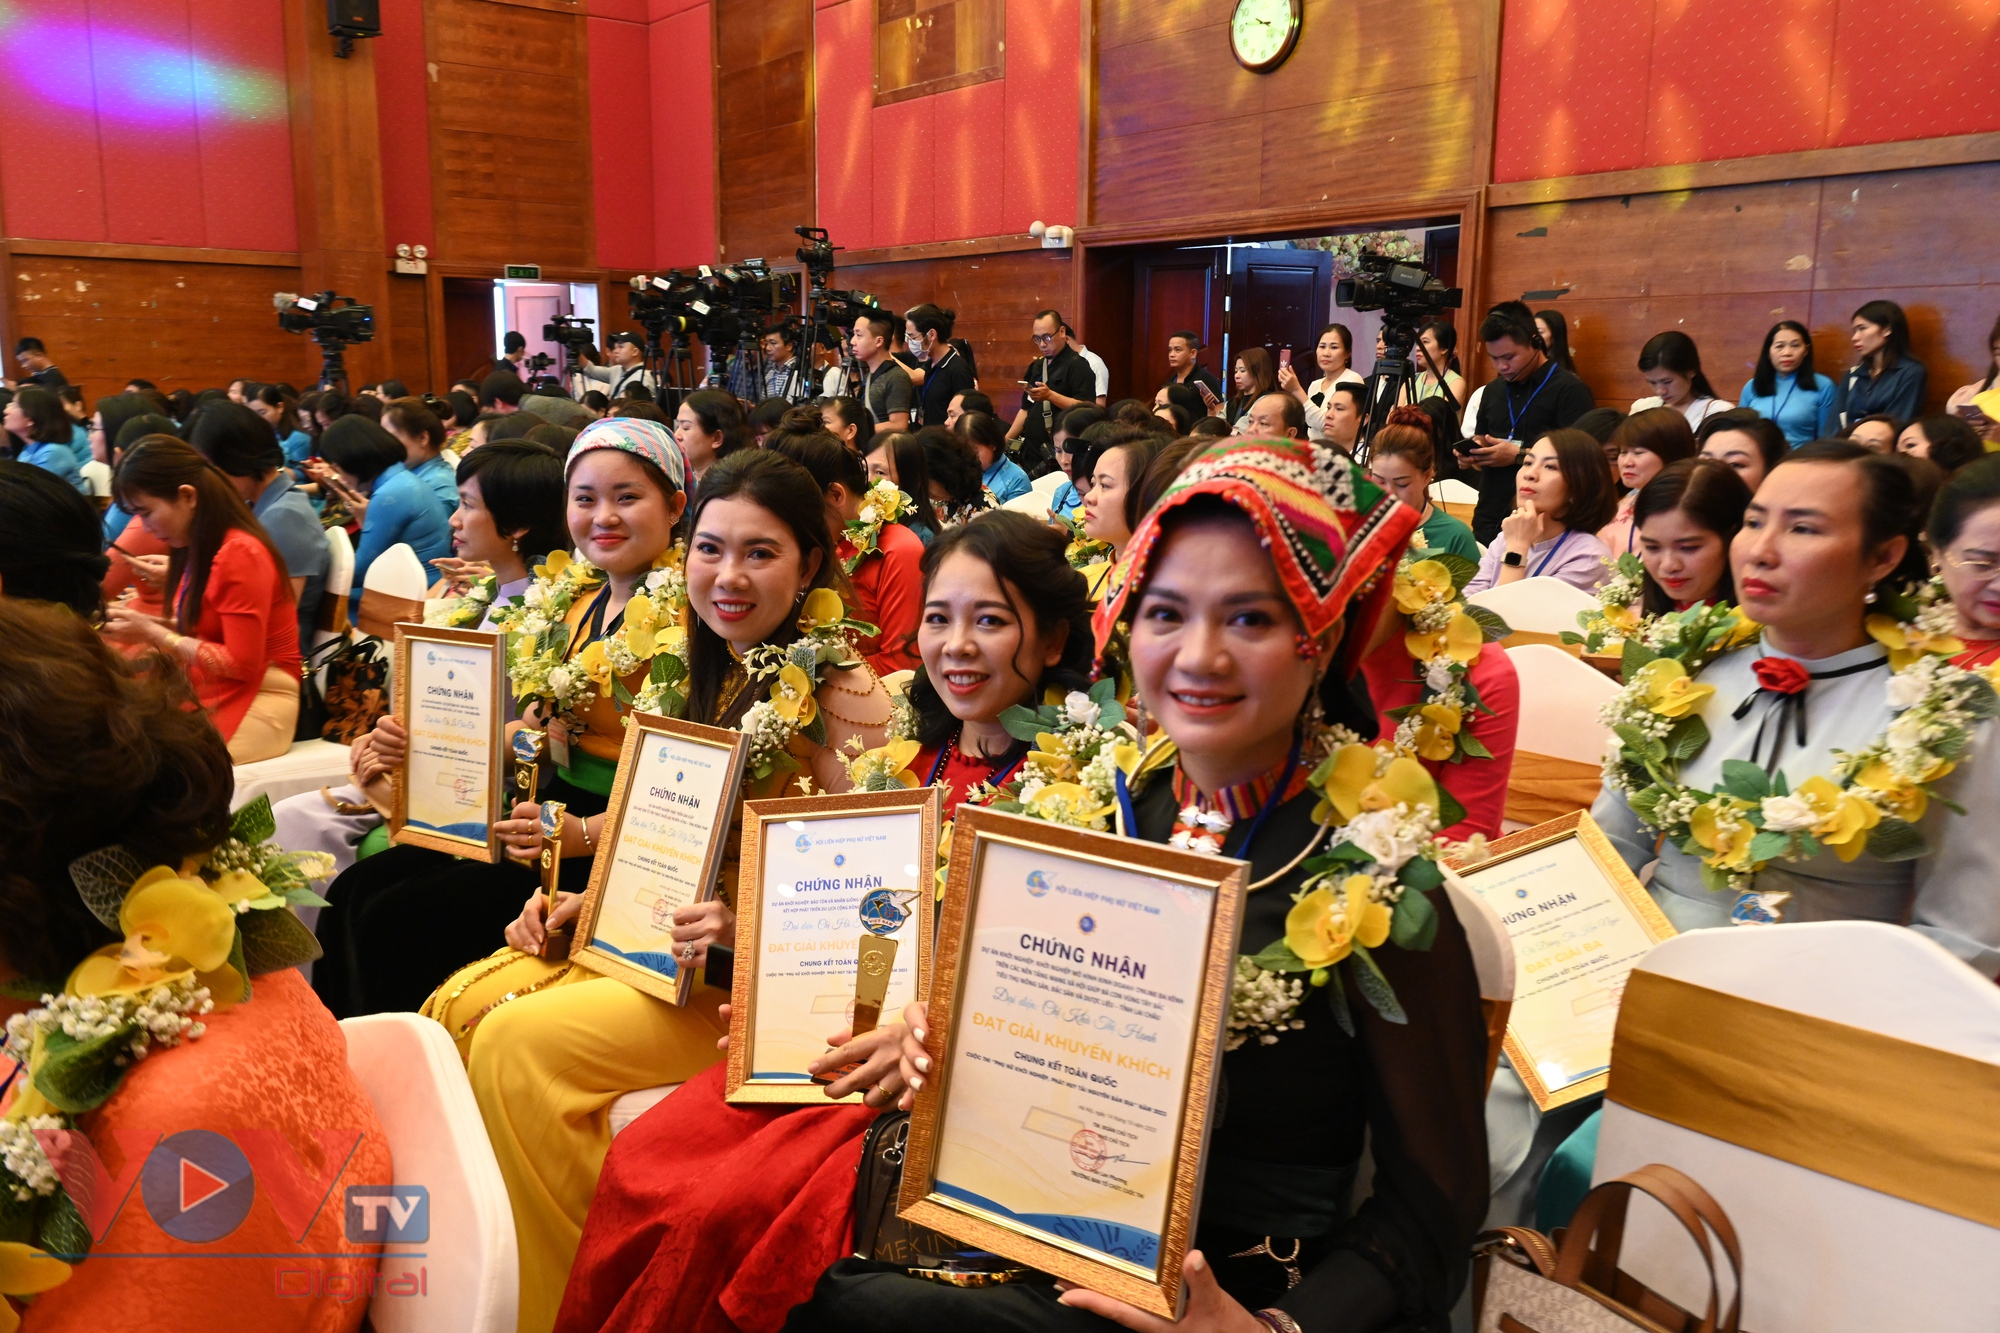 Thủ tướng Phạm Minh Chính dự lễ trao giải Chung kết toàn quốc Cuộc thi “Phụ nữ khởi nghiệp, phát huy tài năng nguyên bản địa” - Ảnh 4.